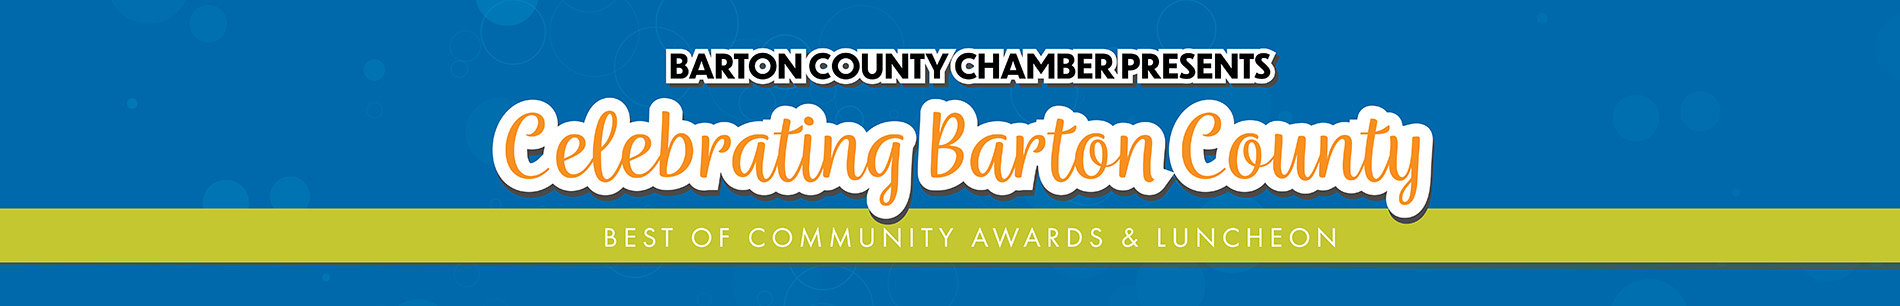 Barton County Community Awards